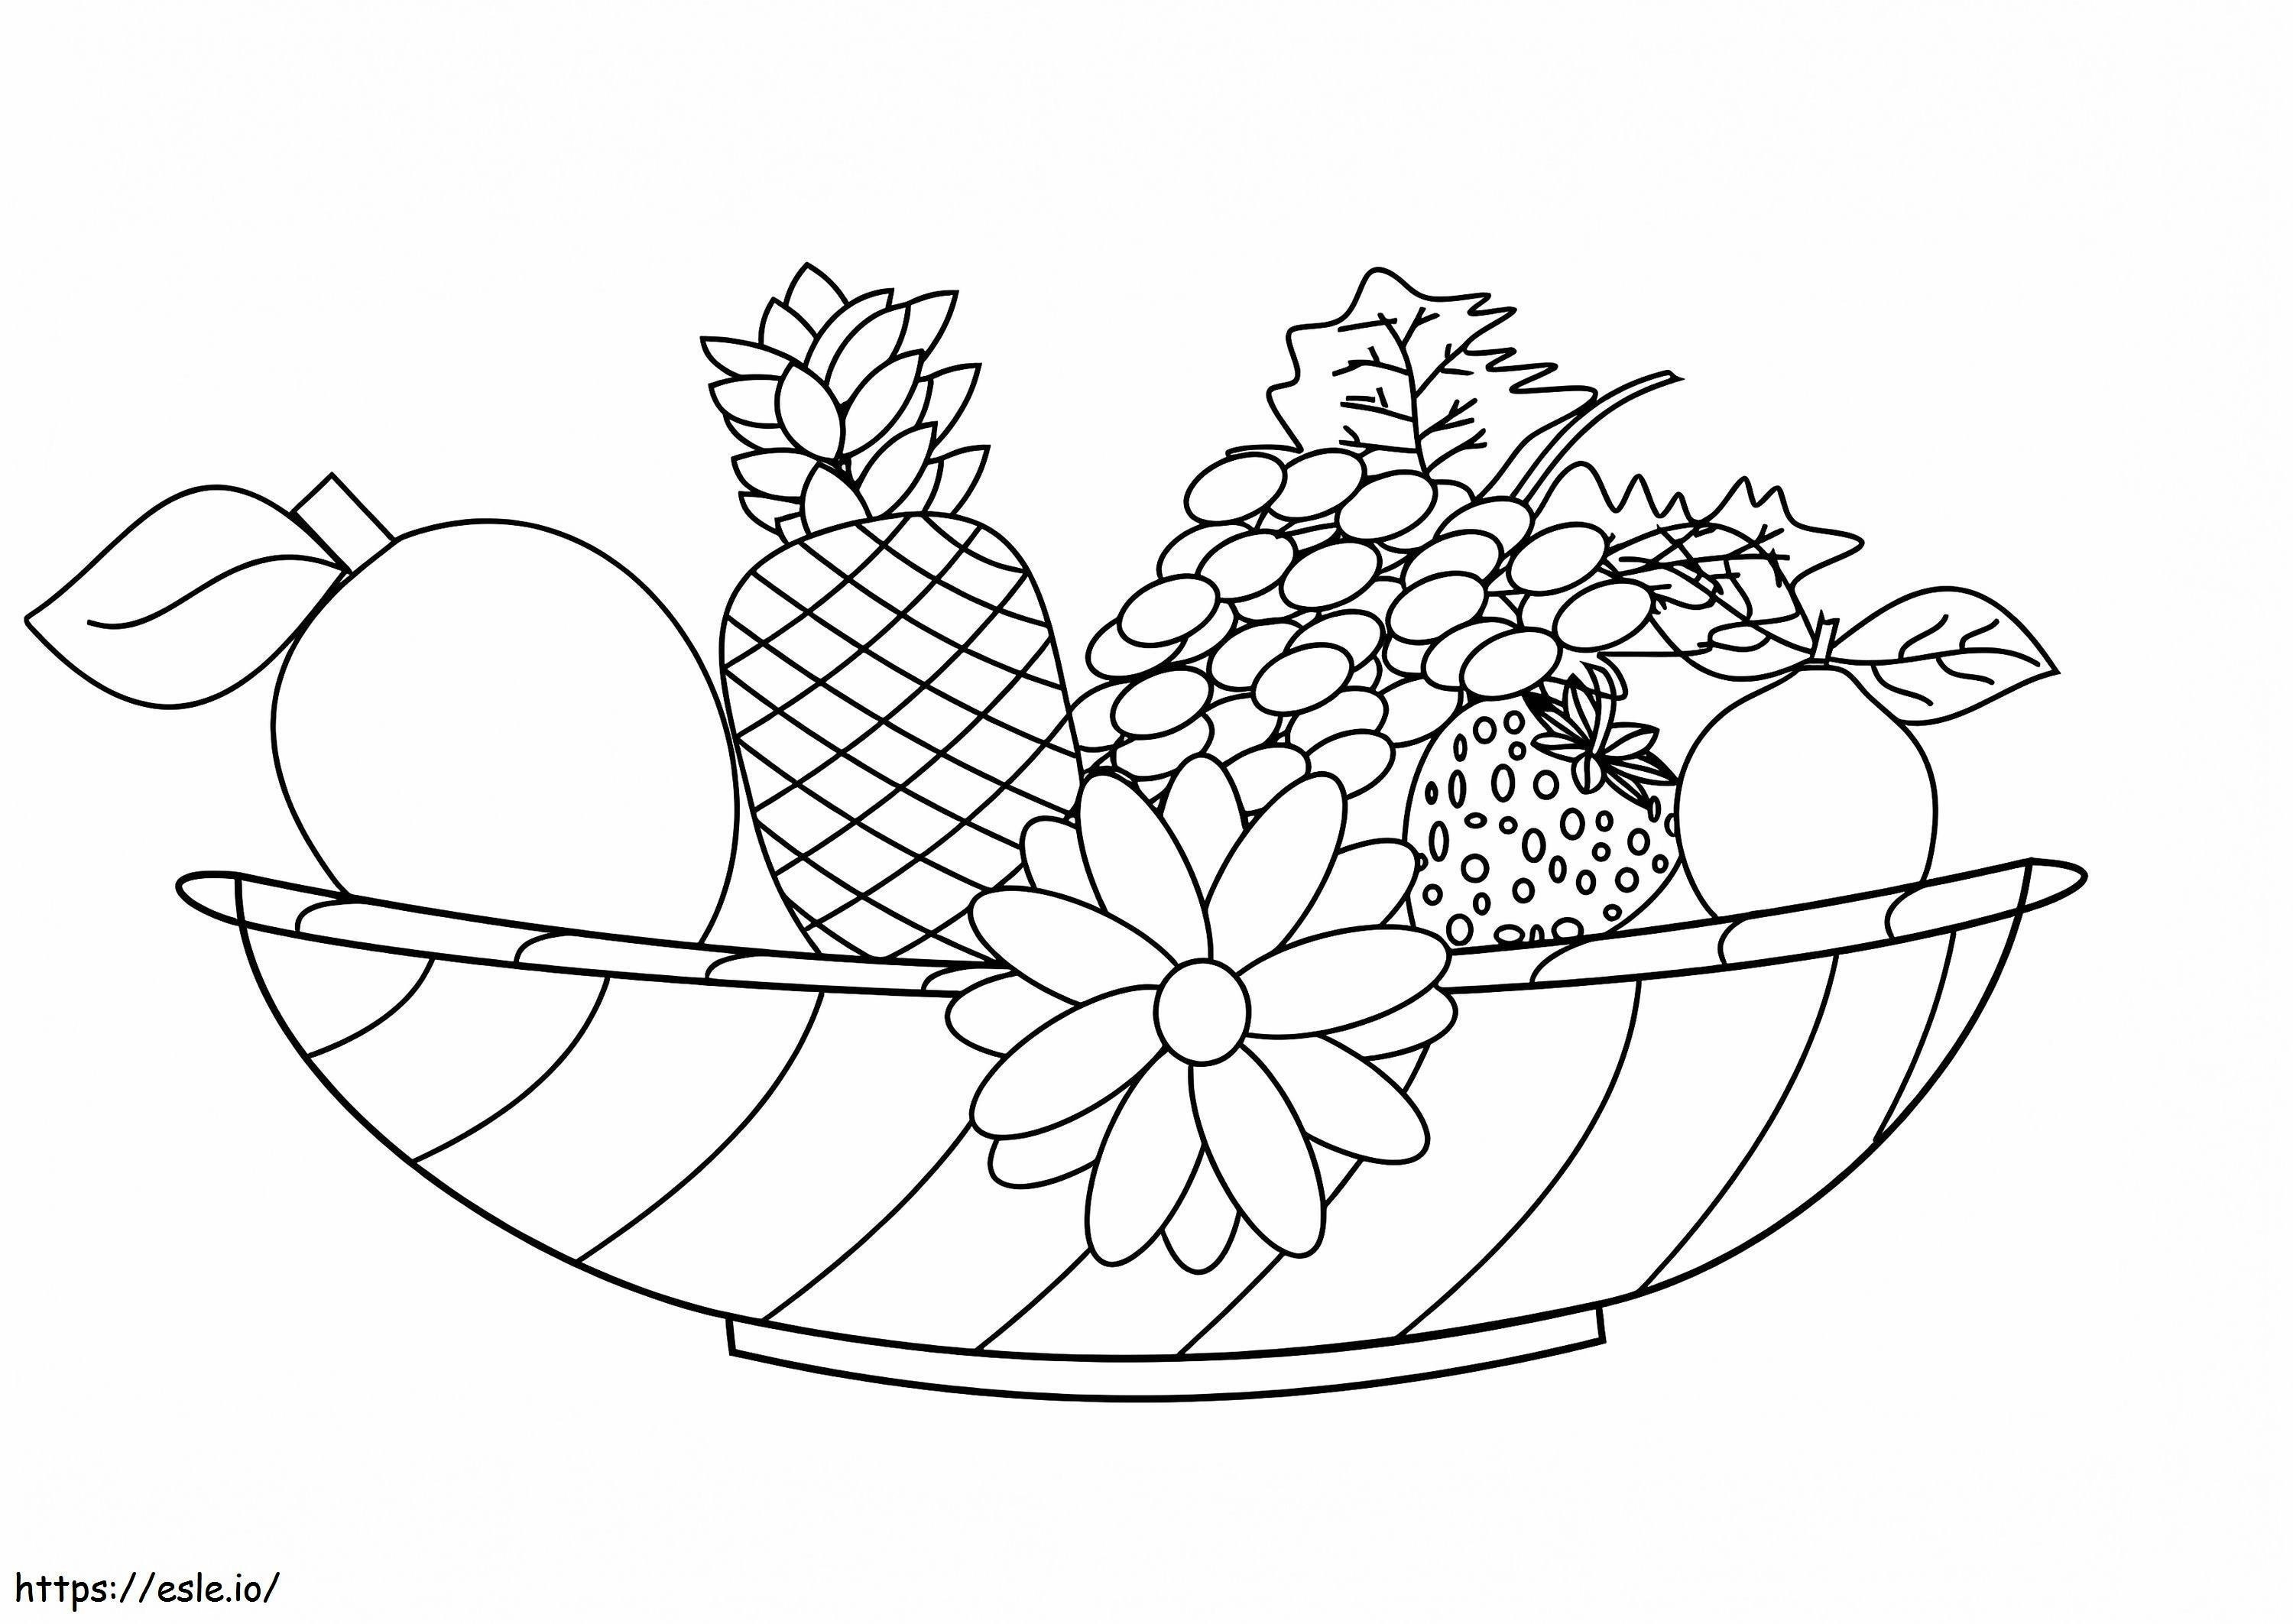 Coloriage Fruits et fleurs à imprimer dessin